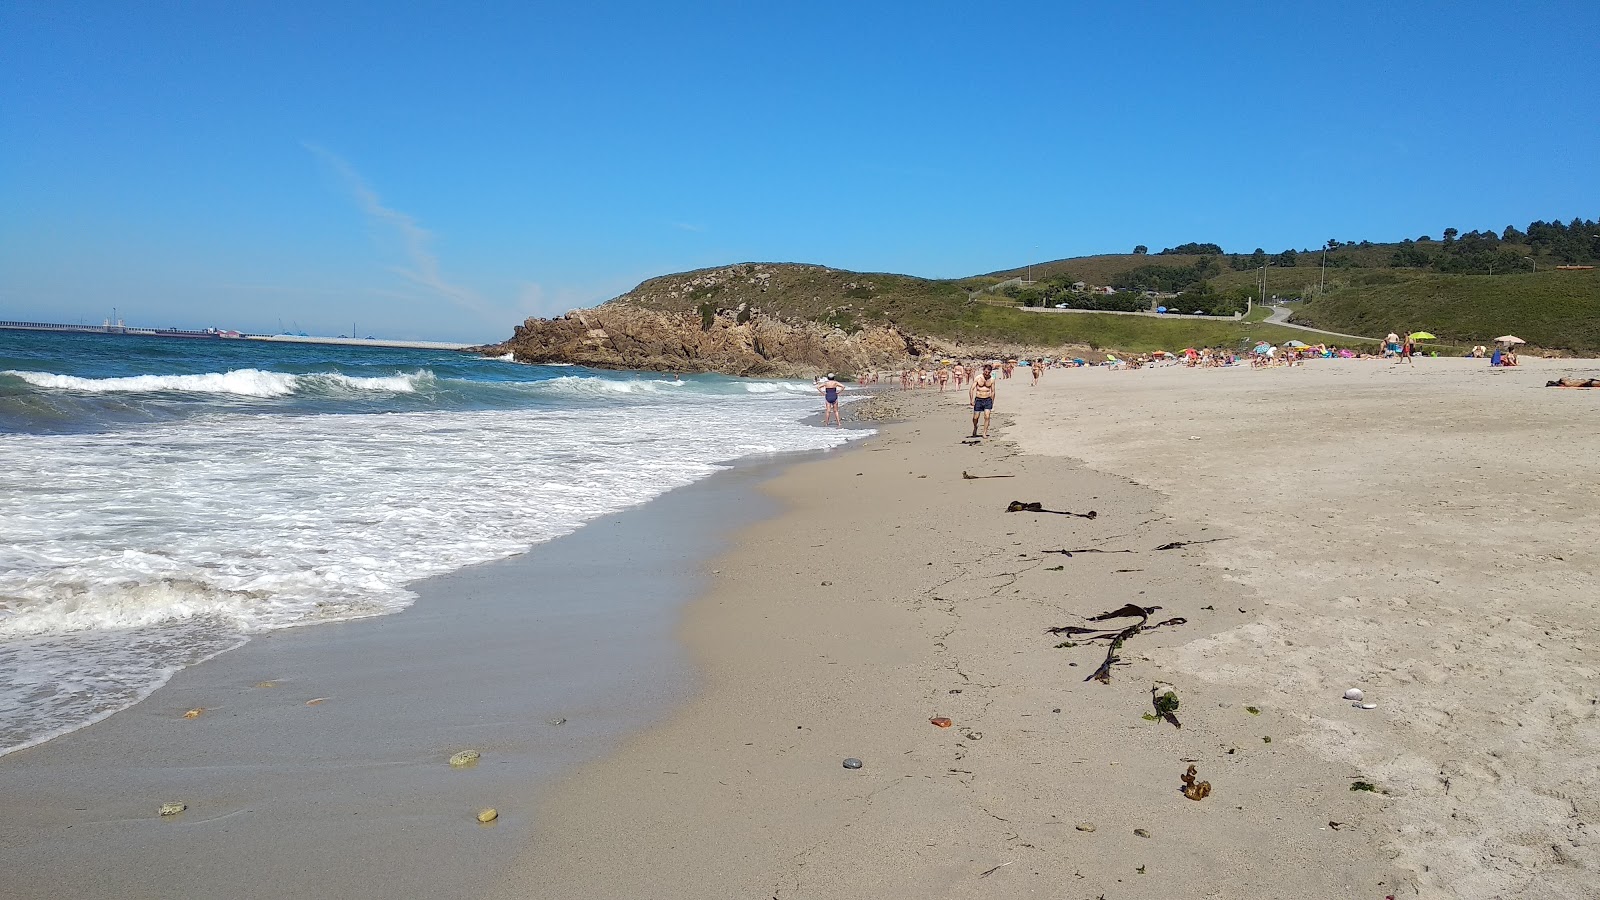 Praia de Valcobo'in fotoğrafı beyaz kum yüzey ile